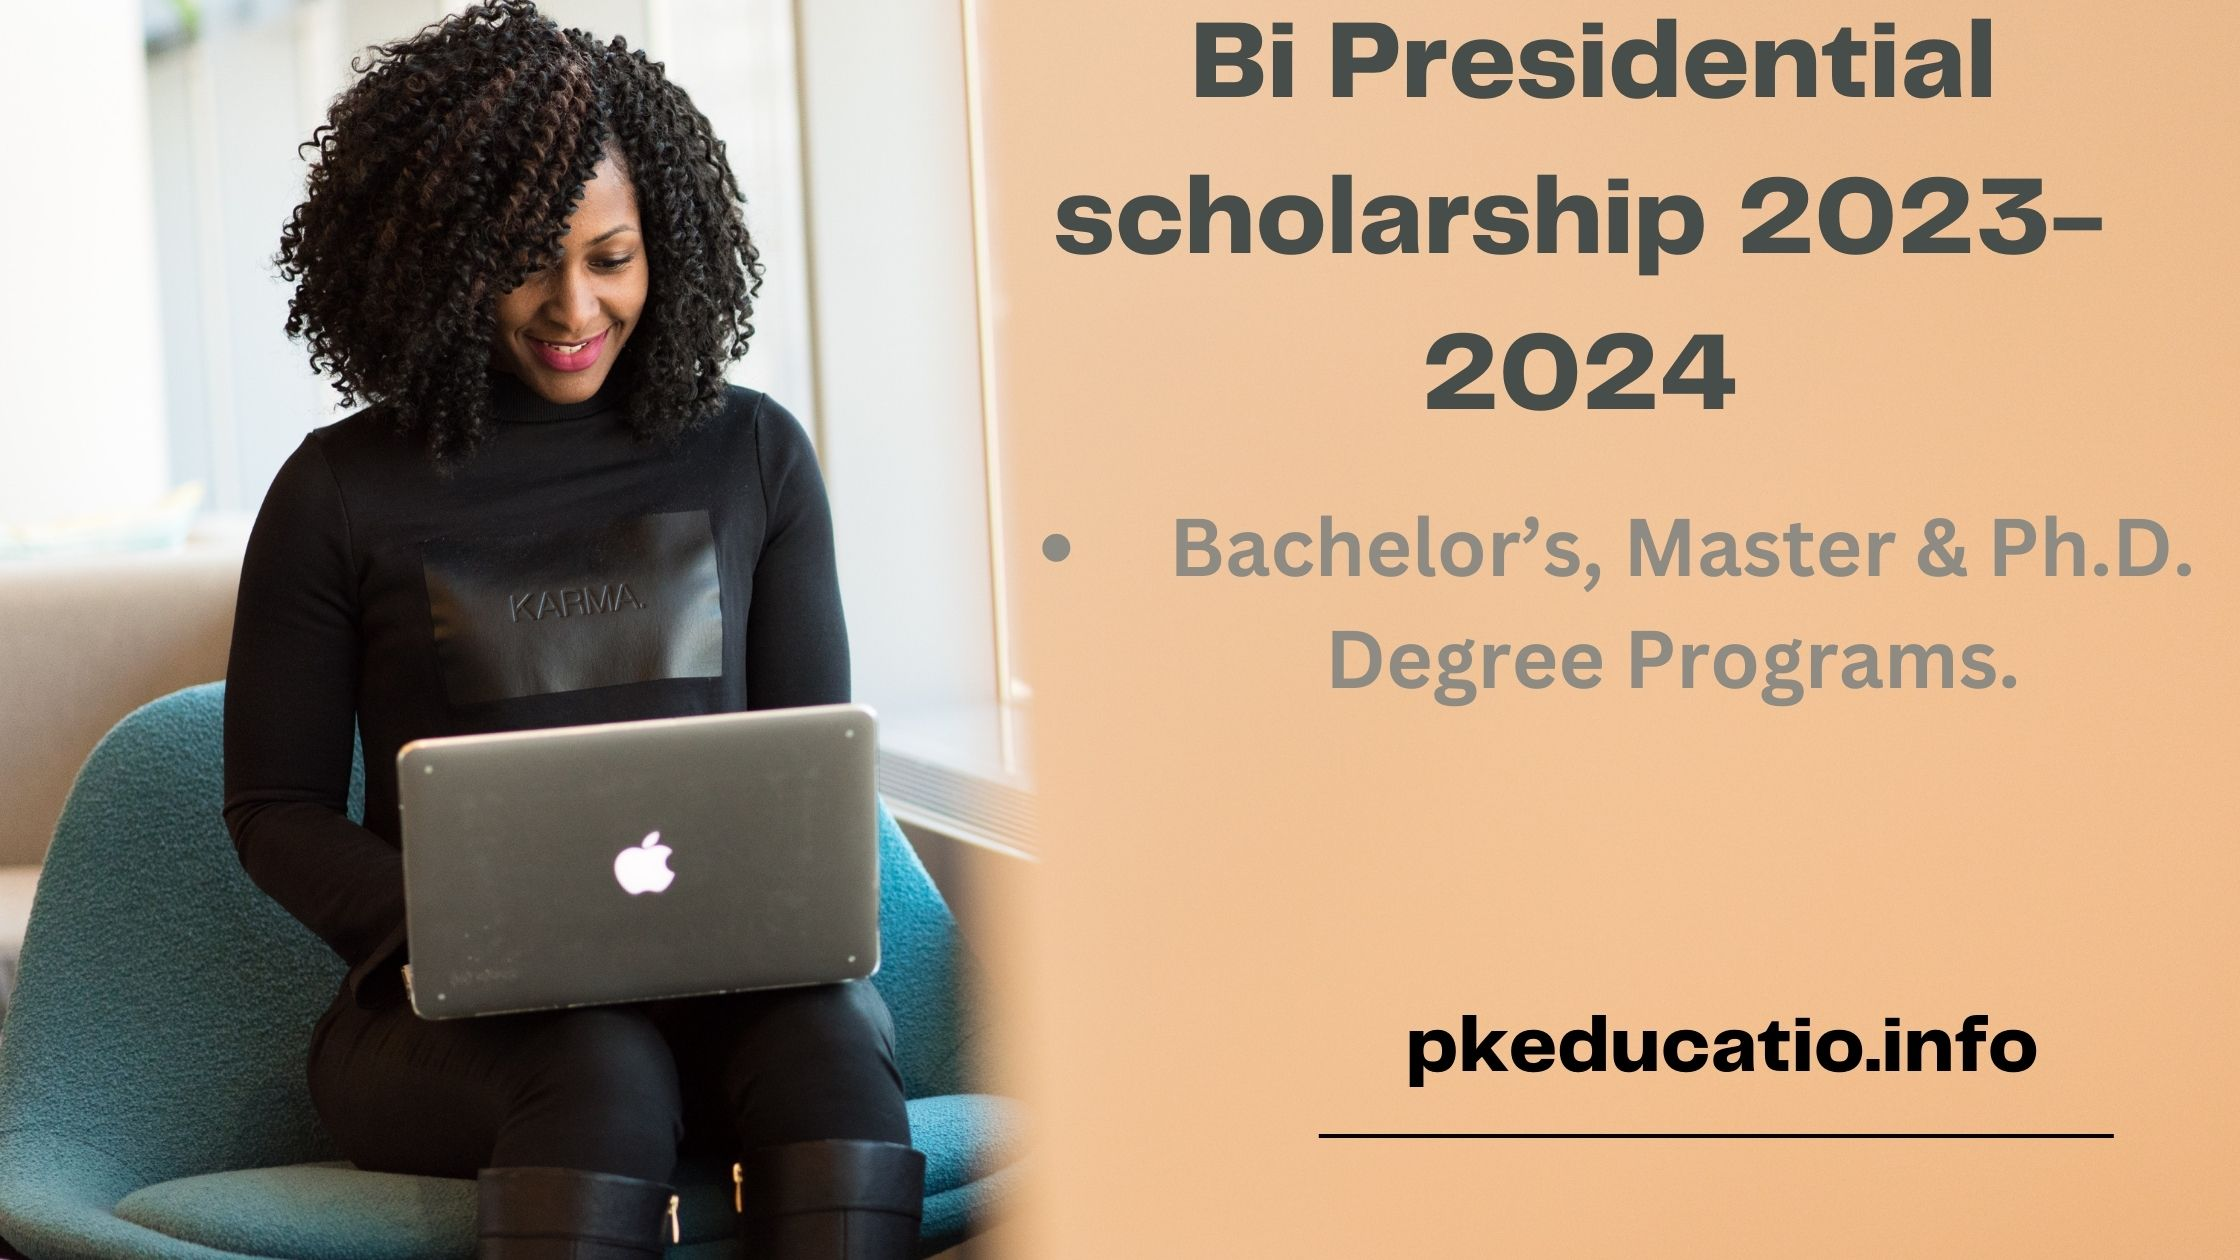 Bi Presidential scholarship 2023-2024